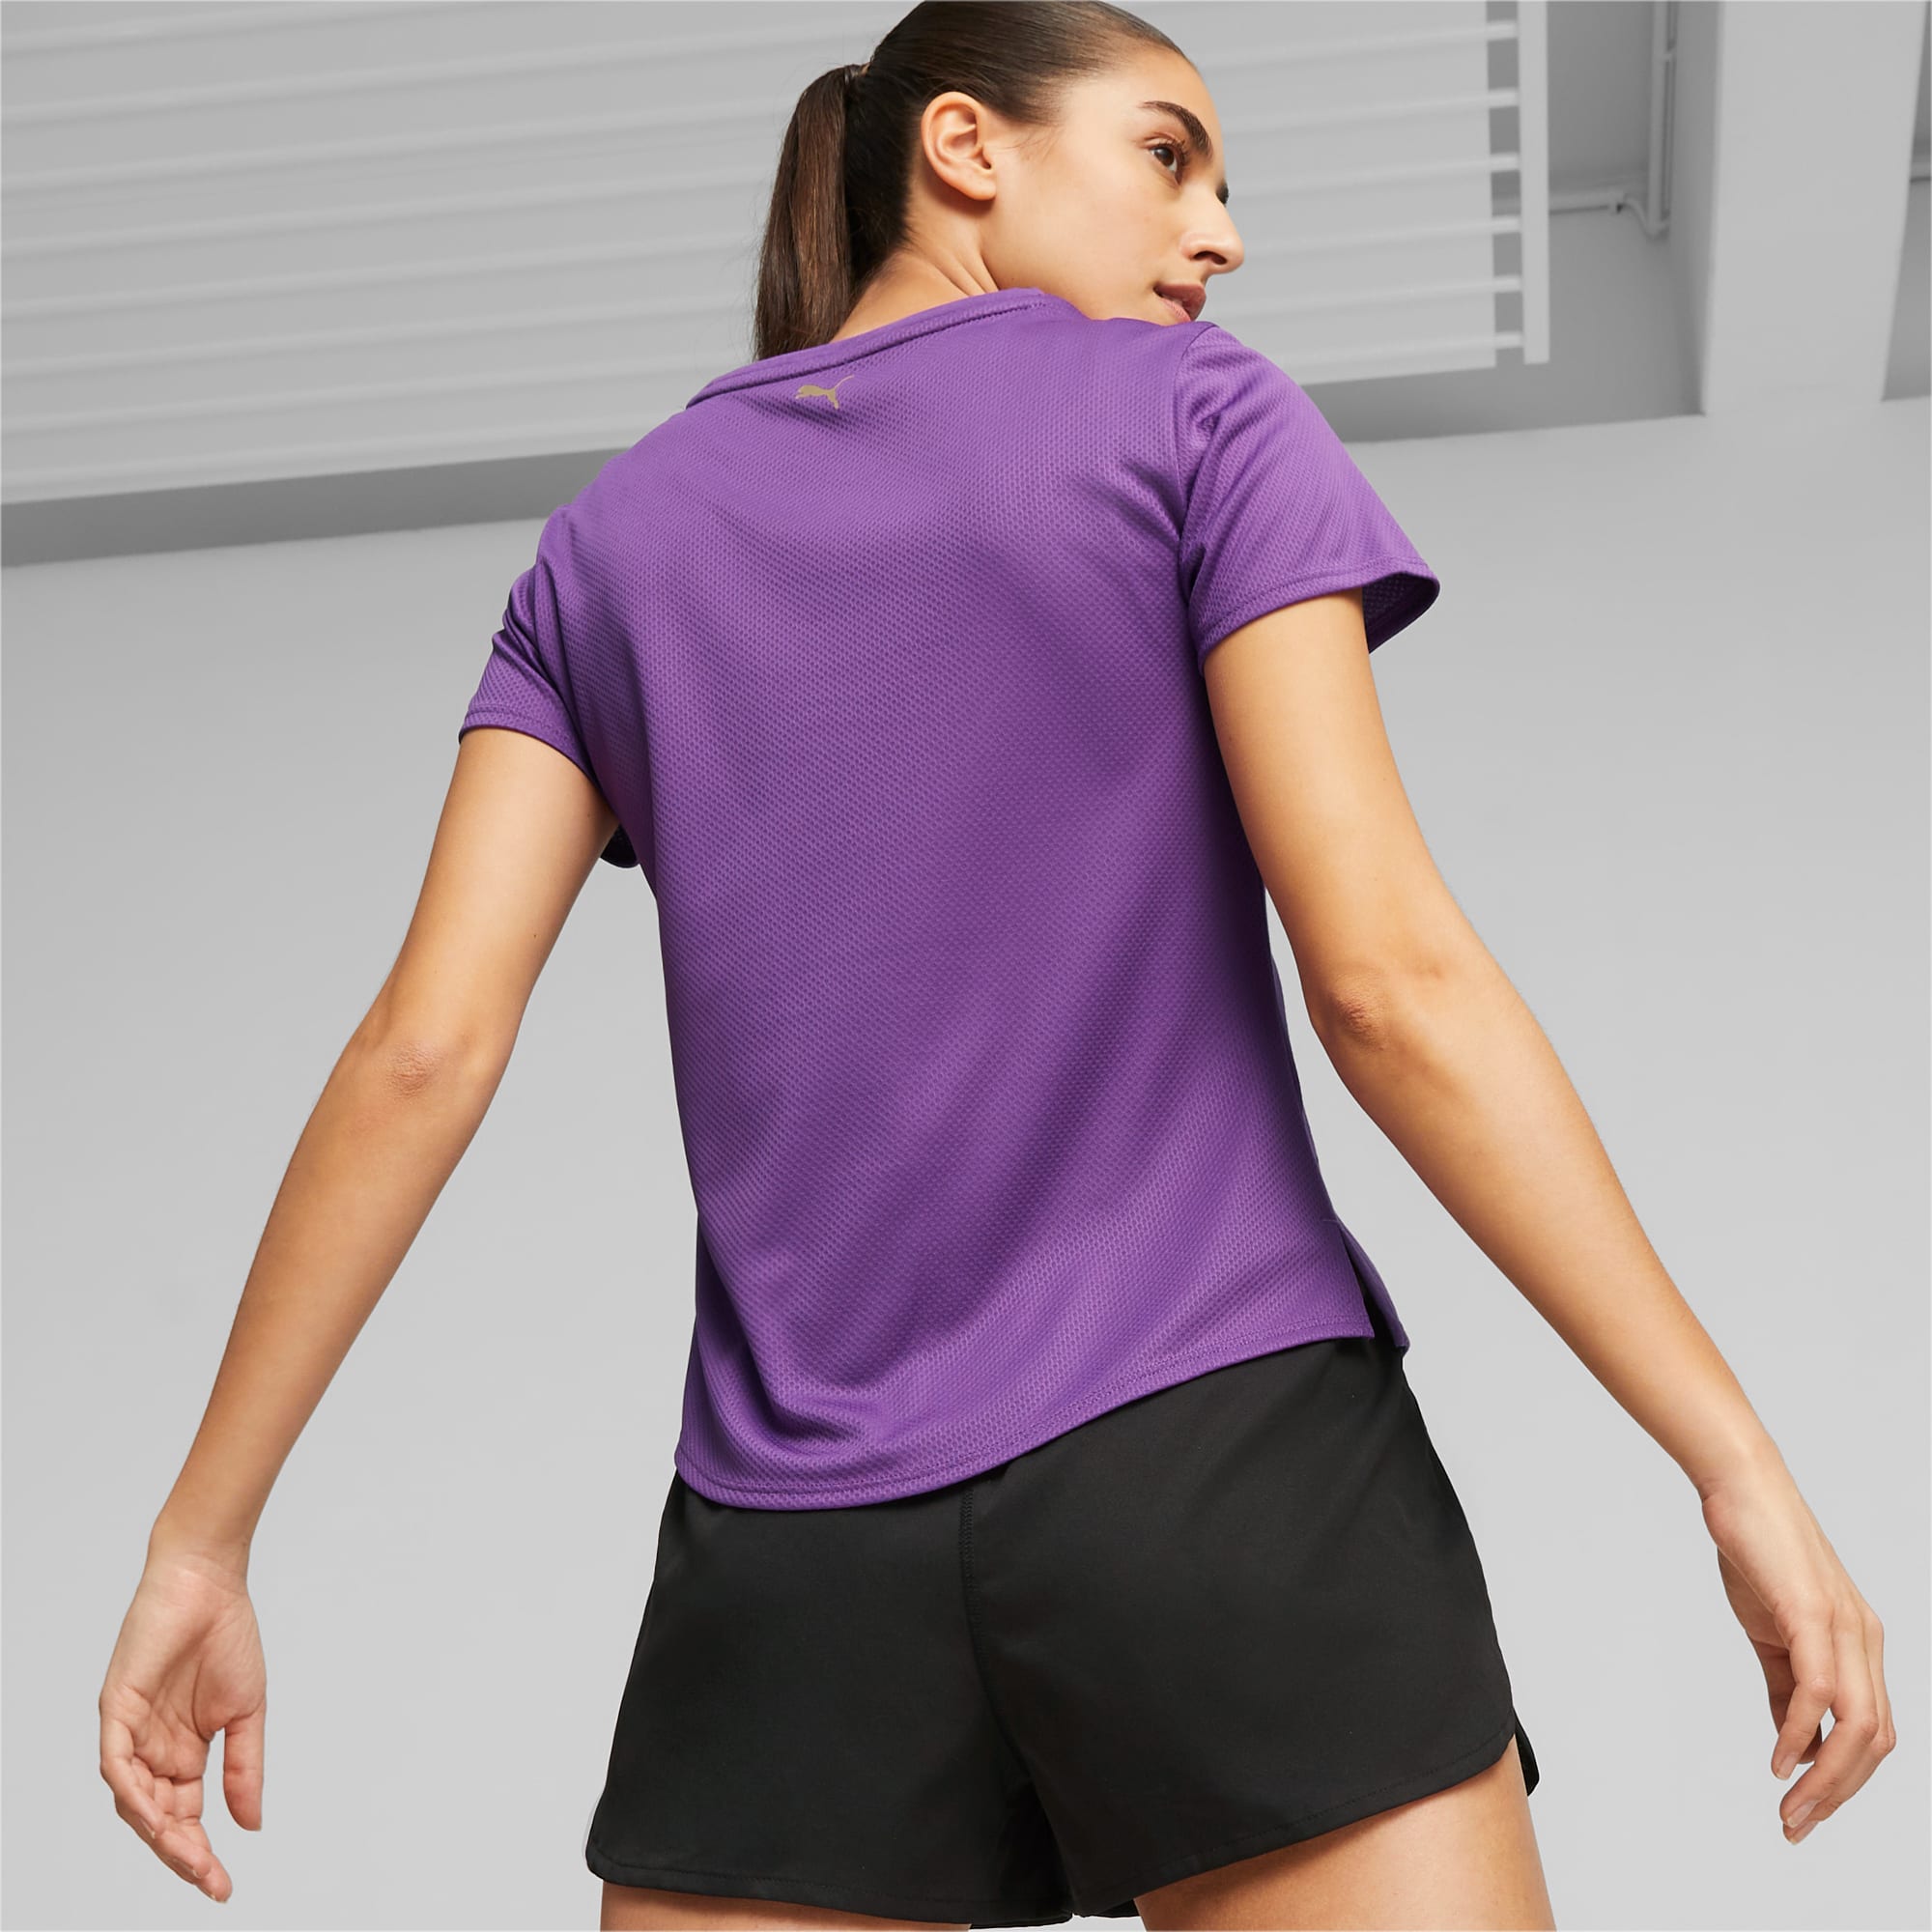 PUMA FIT Ultrabreathe Trainings-T-Shirt Damen, Lila/Gold, Größe: XS, Kleidung